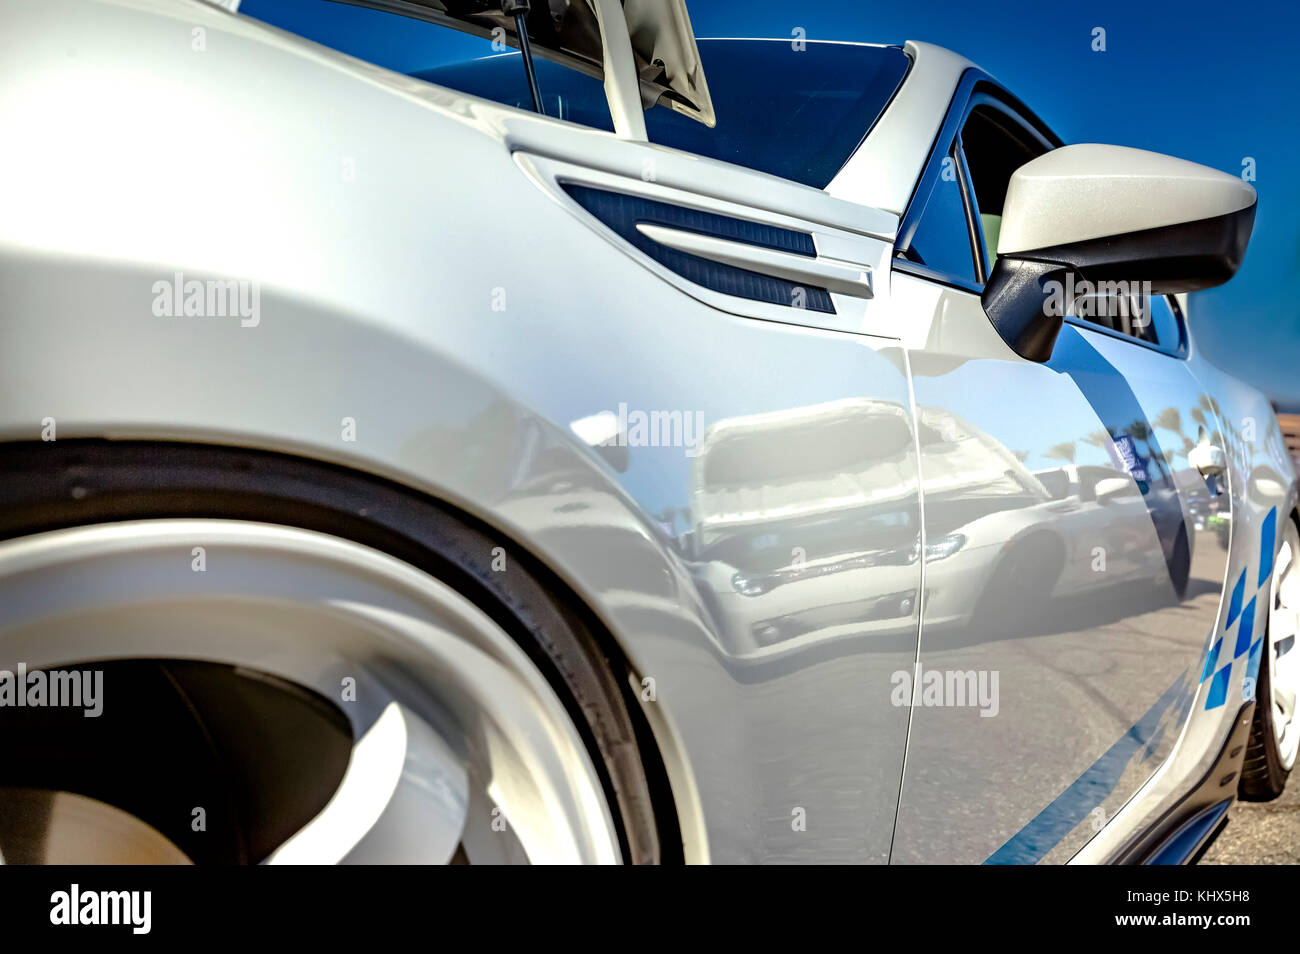 Weißes Auto mit blauen Streifen und weißen Felgen closeup von vorne  Fahrerseite erschossen. verschiedenen Reifen an einem südlichen Kalifornien  Ereignis Stockfotografie - Alamy